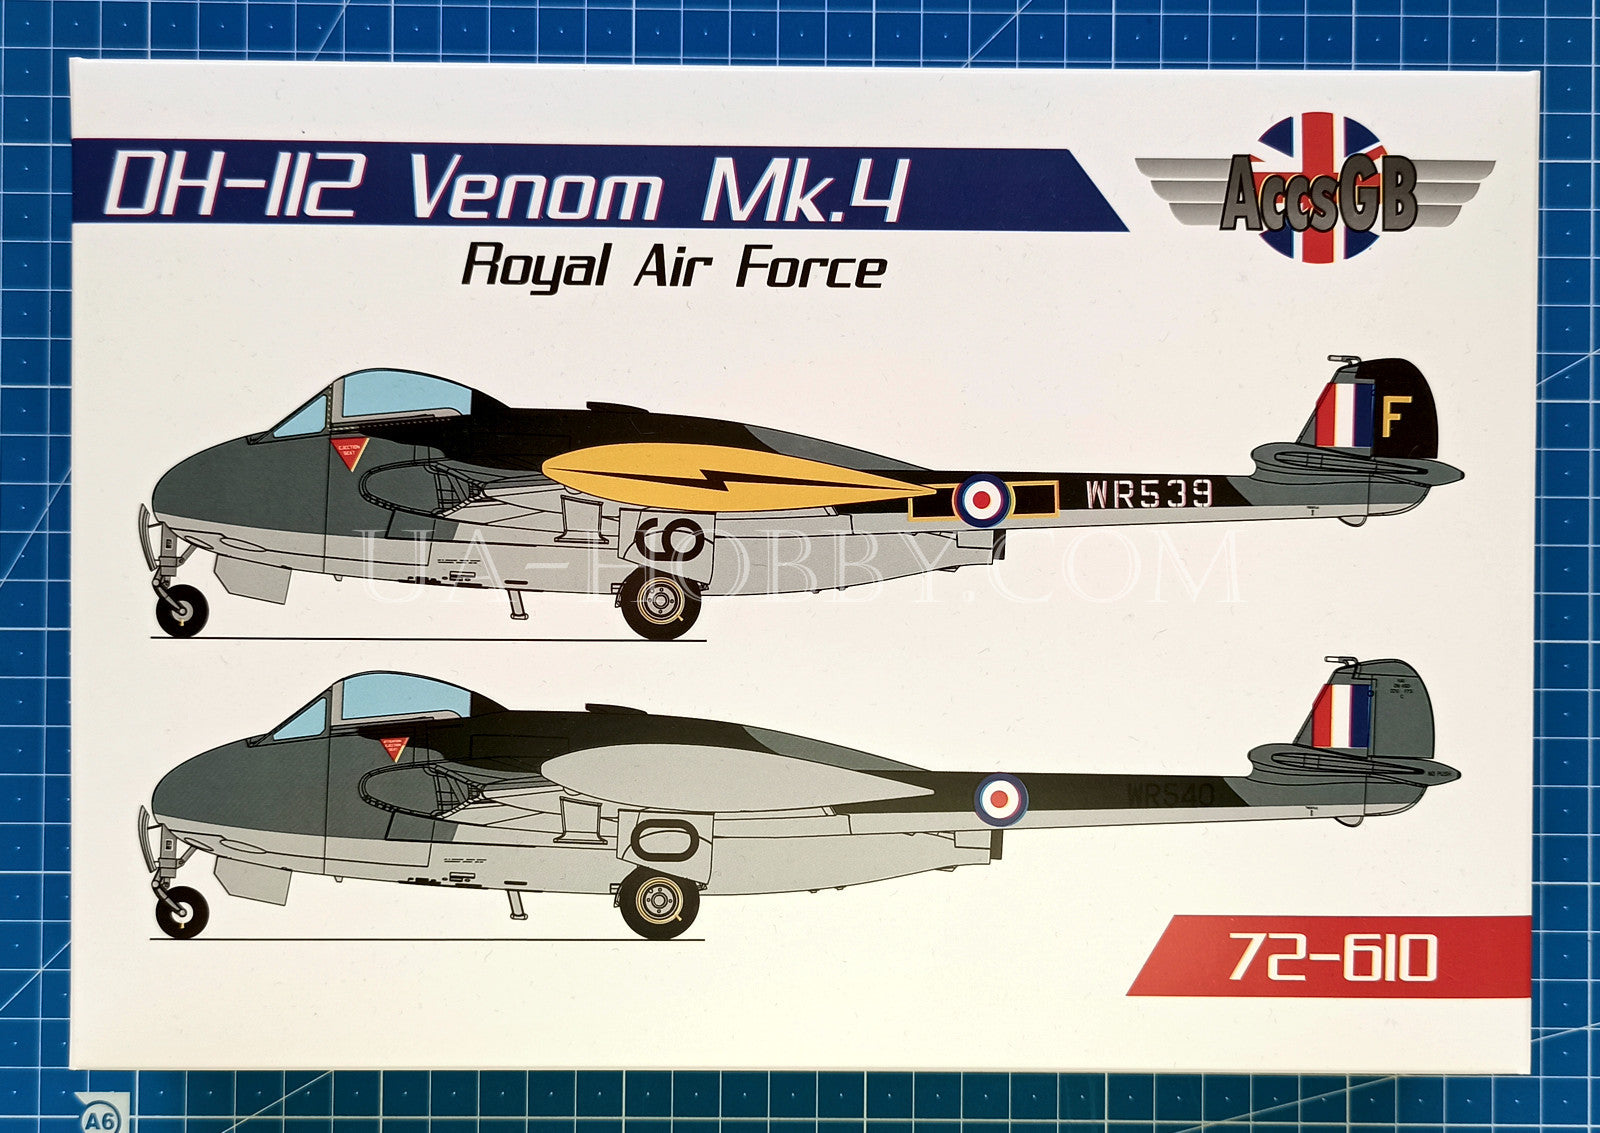 1/72 DH-112 Venom Mk.4 Royal Air Force. AccsGB 72-610